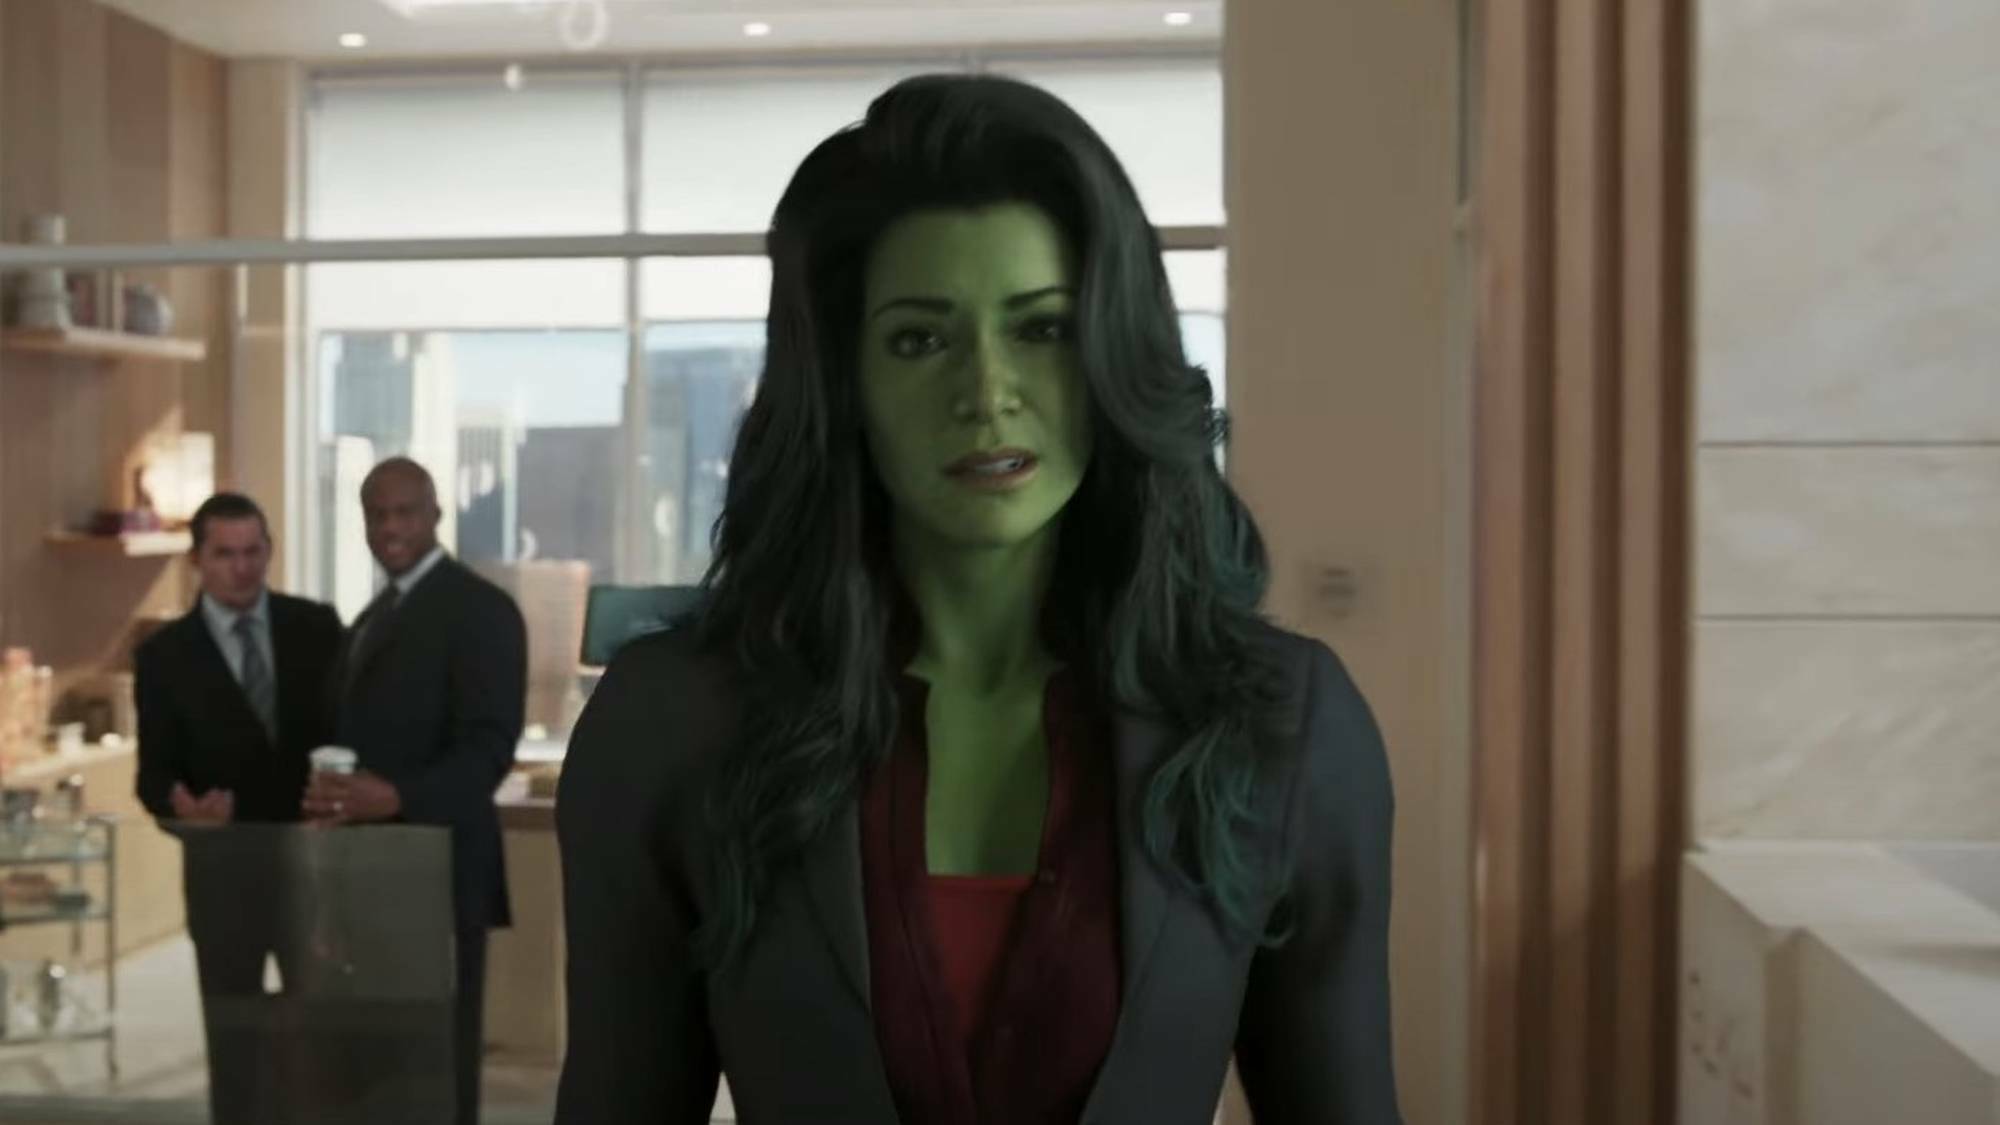 She-Hulk enthält eine Ghost Rider-Referenz Titel